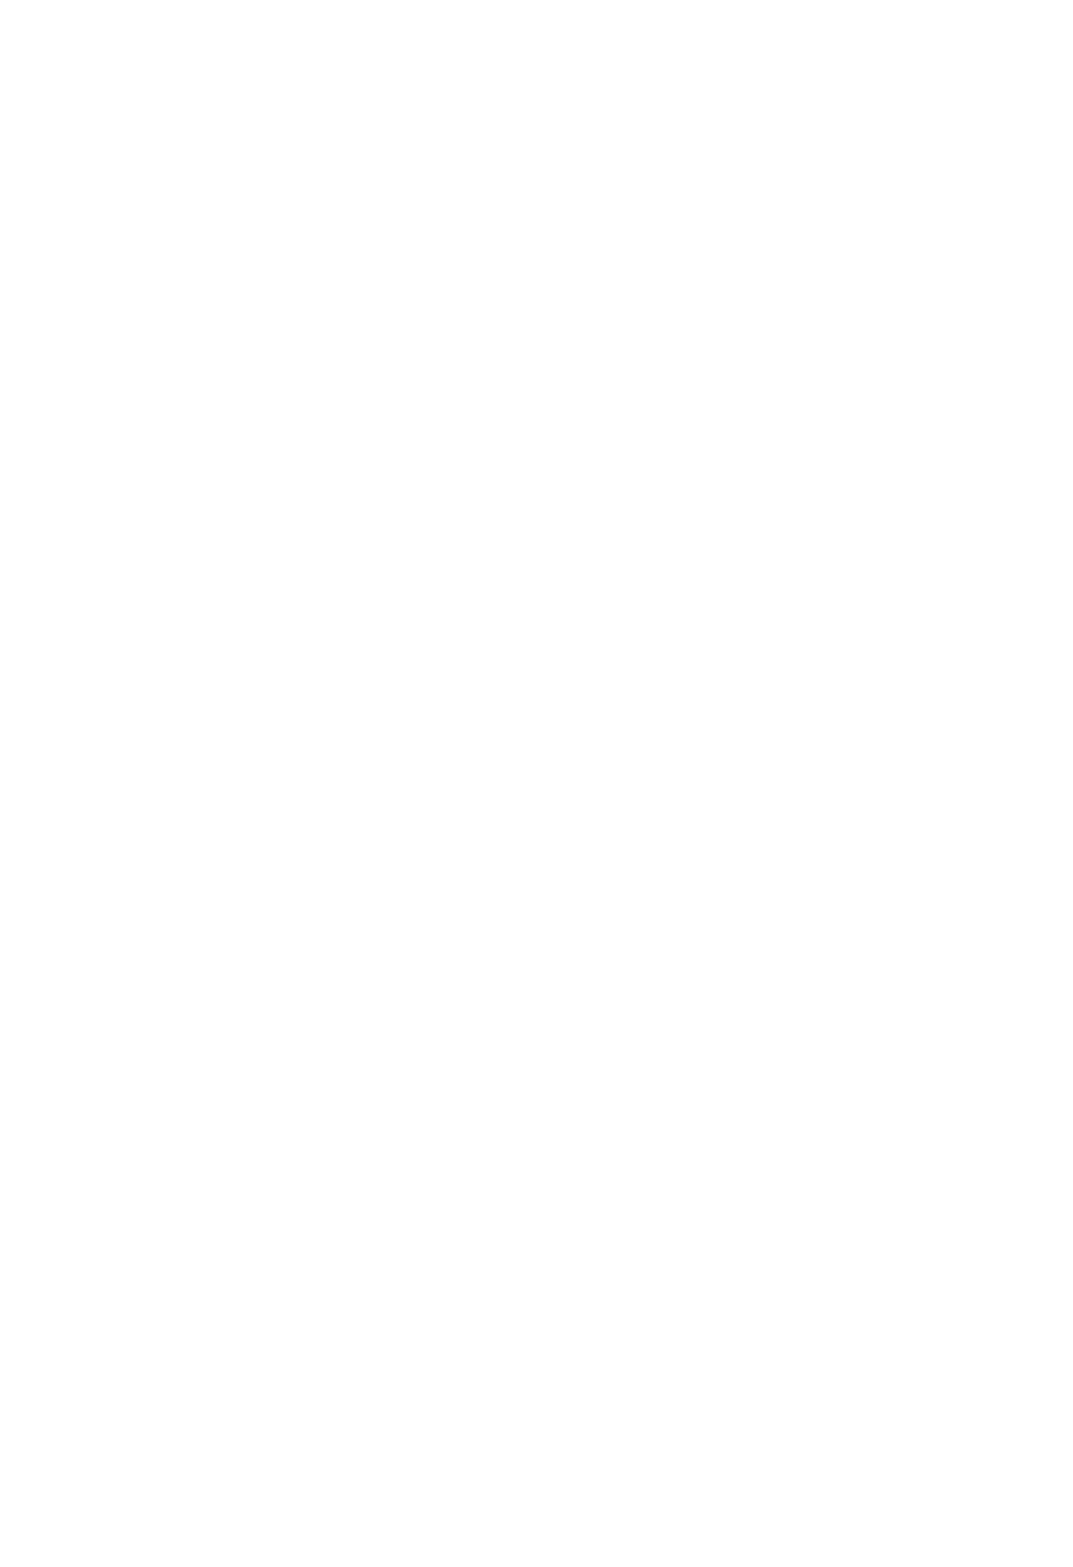 Schaeffler logo for dark backgrounds (transparent PNG)